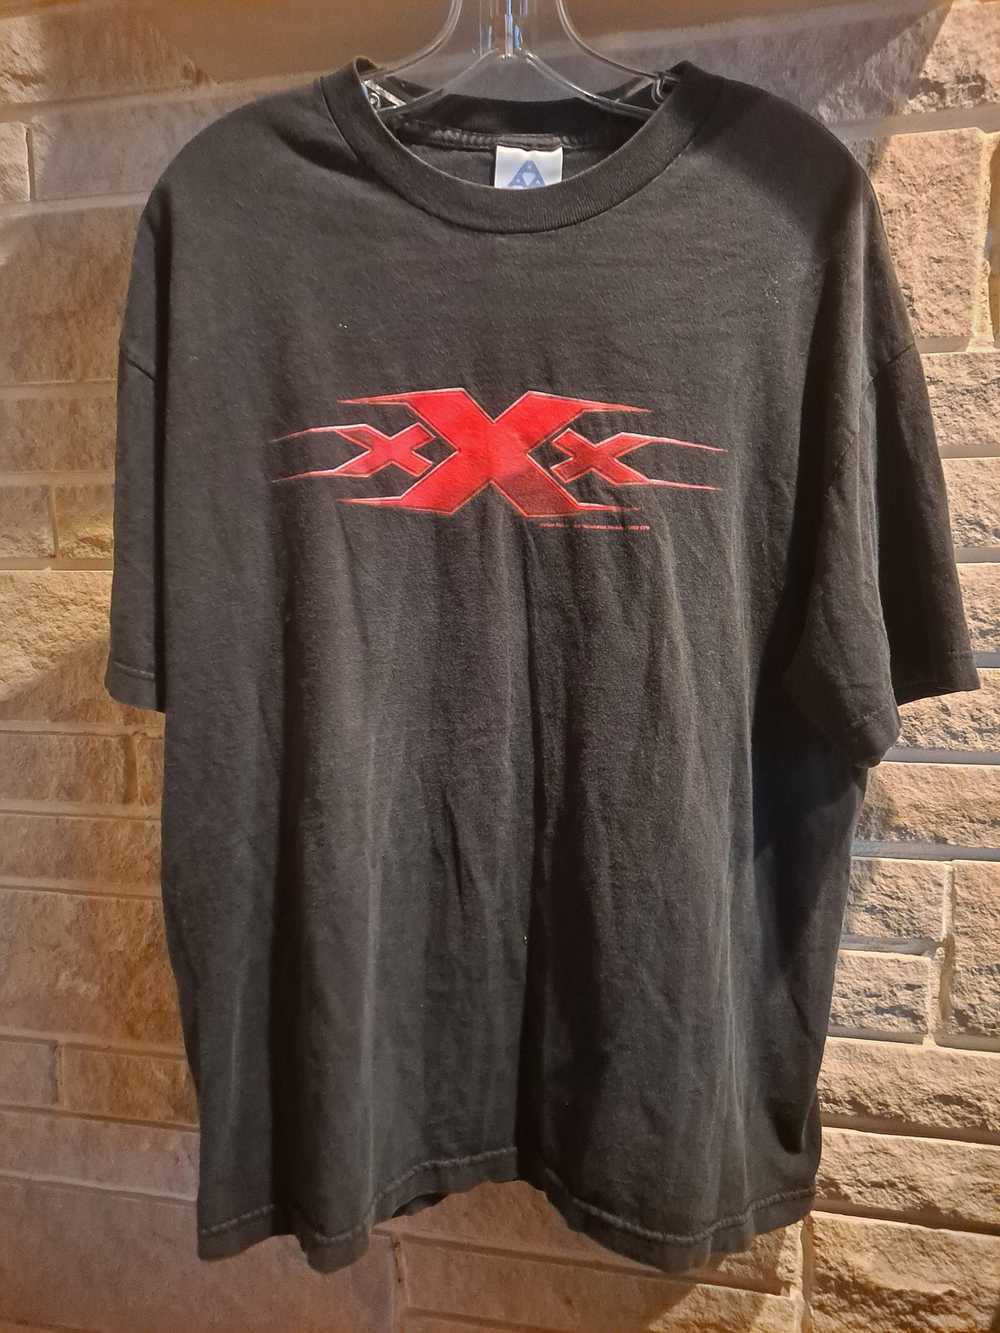 Vintage 2002 XXX Vin Diesel Movie Promo T shirt - image 1